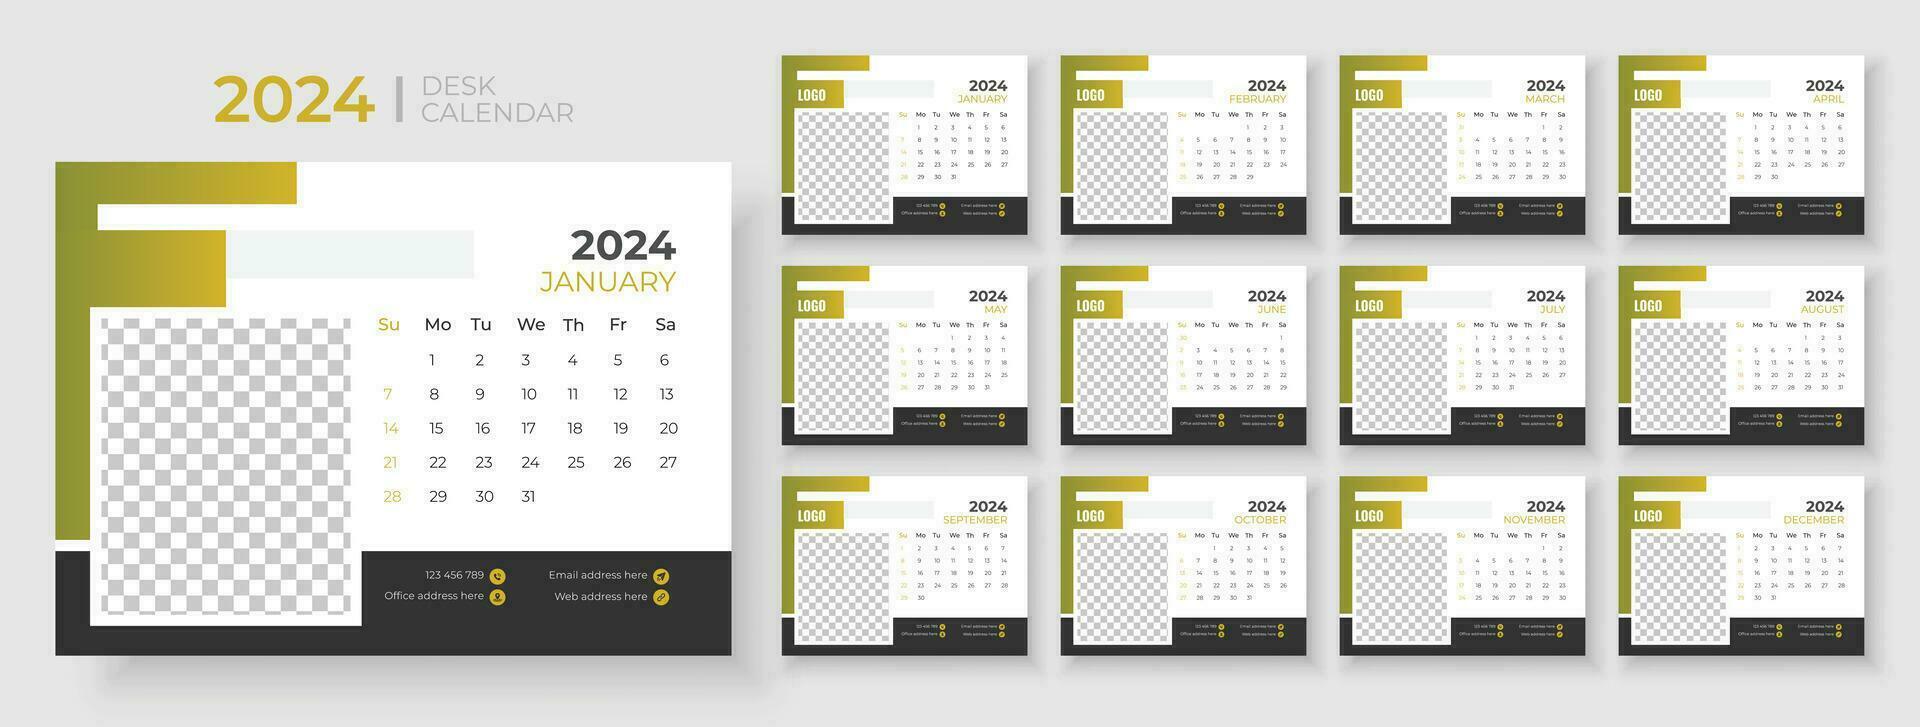 escritorio calendario modelo 2024, semana empieza en domingo, planificador para 2024 año, modelo para anual calendario 2024 vector